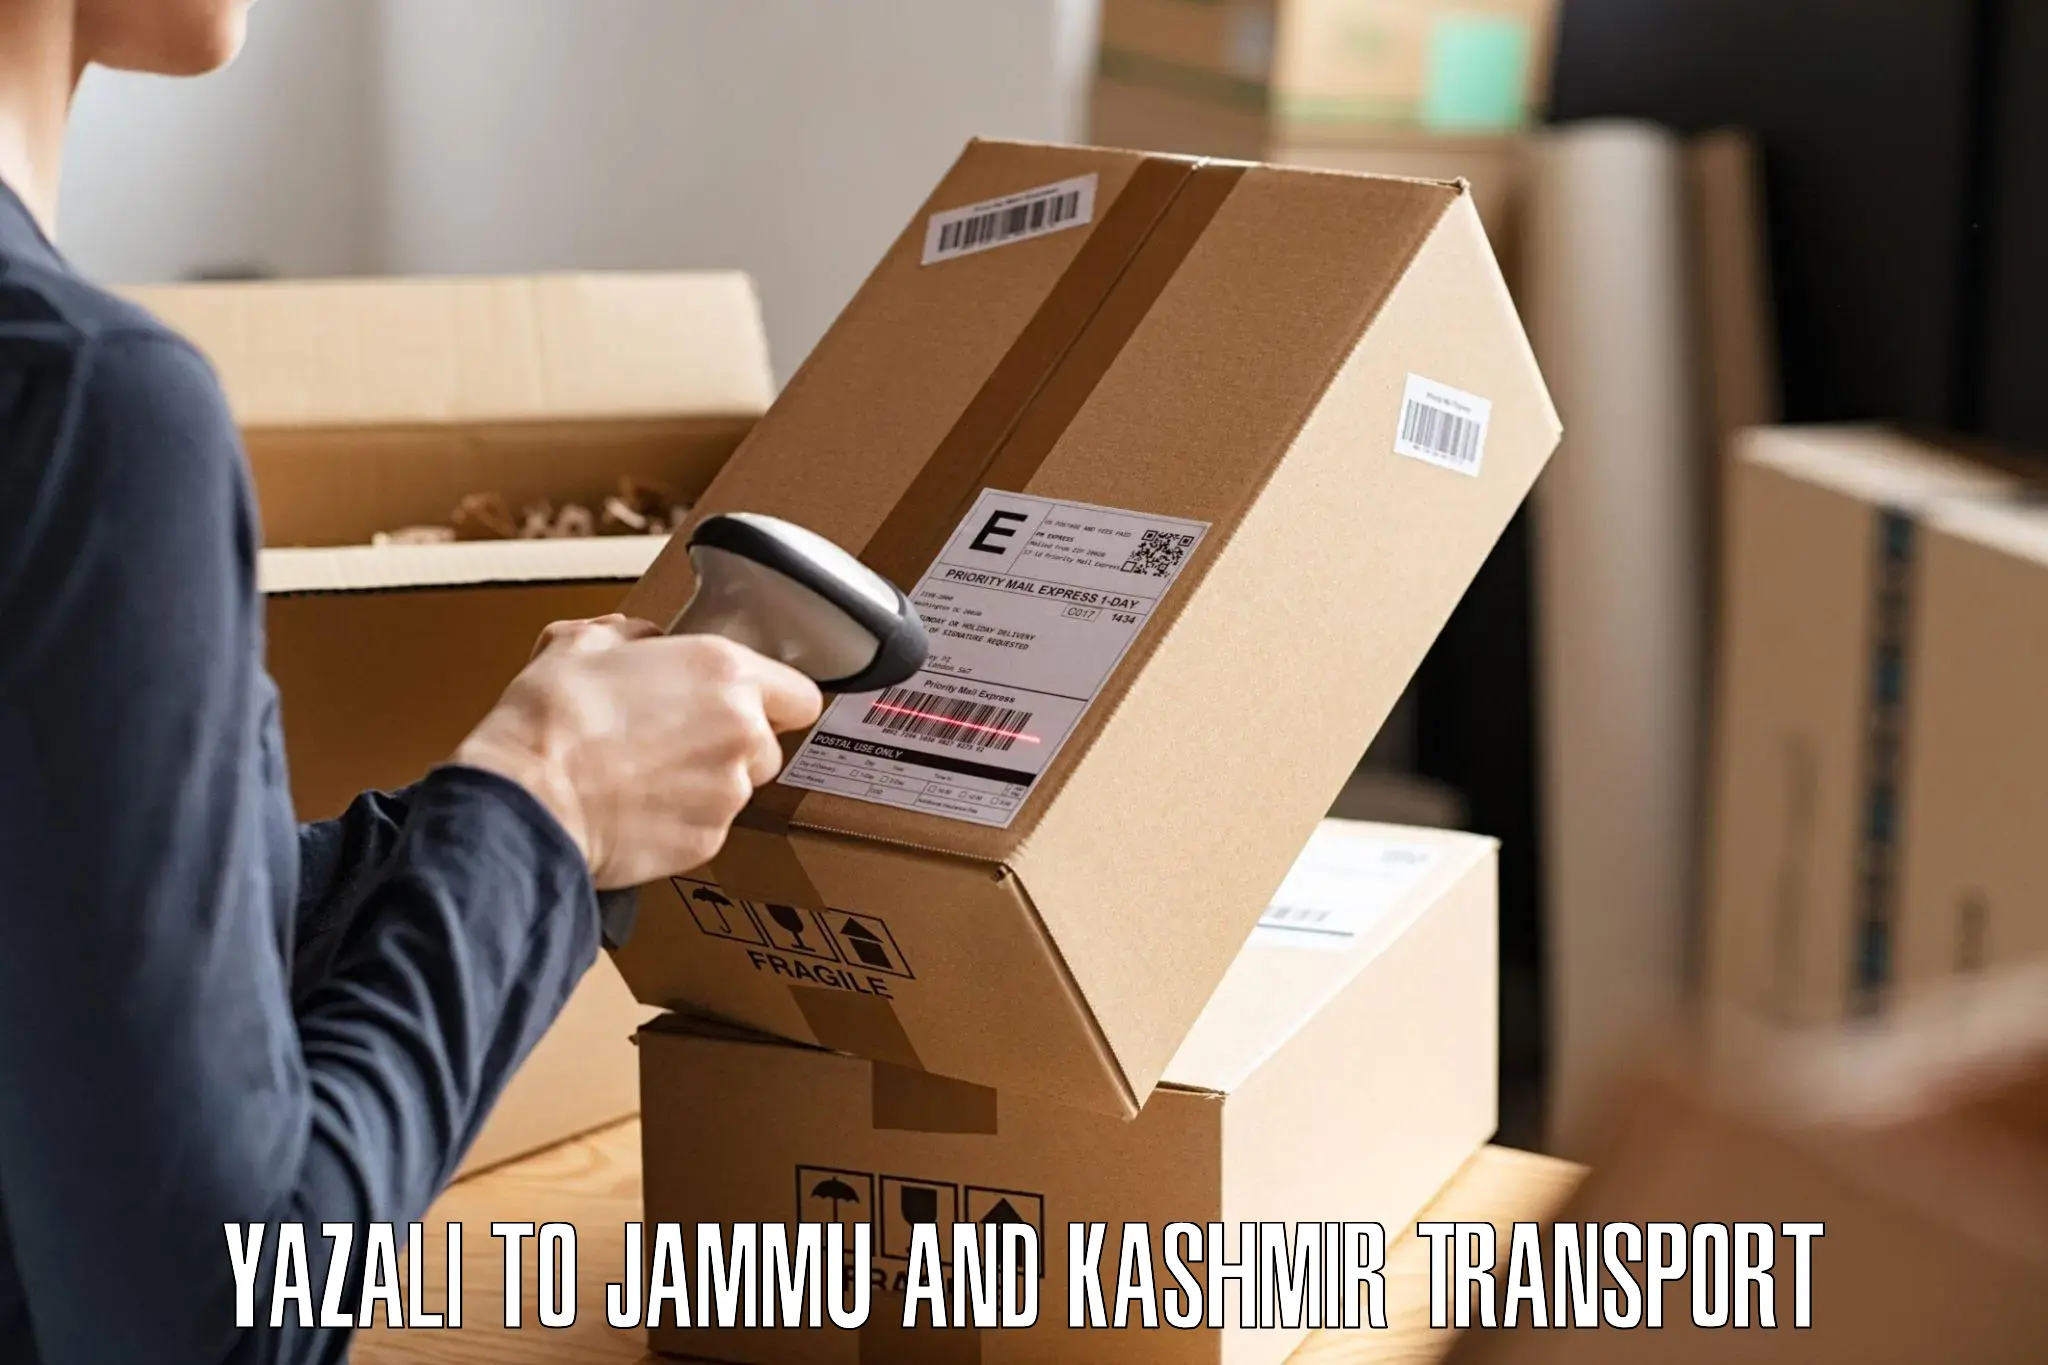 Shipping partner Yazali to Jammu and Kashmir